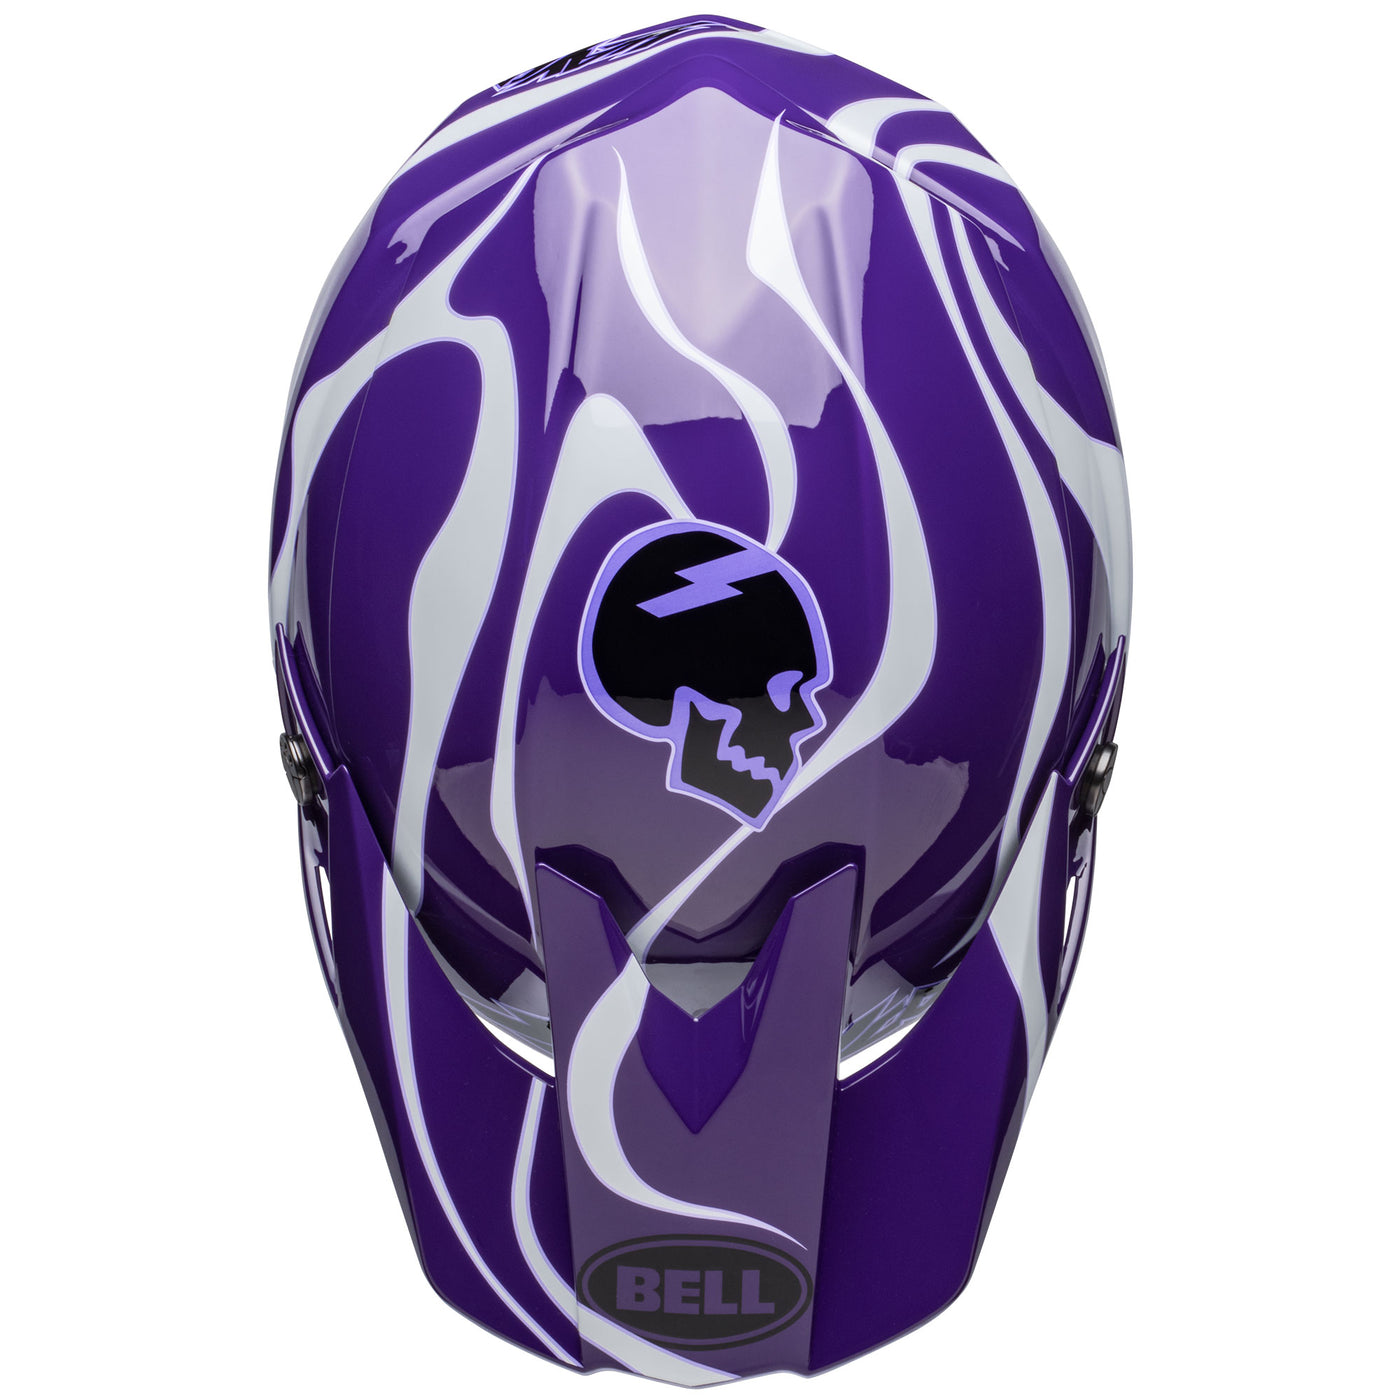 bell moto 10 spherical le dirt motorcycle helmet slayco gloss purple white top